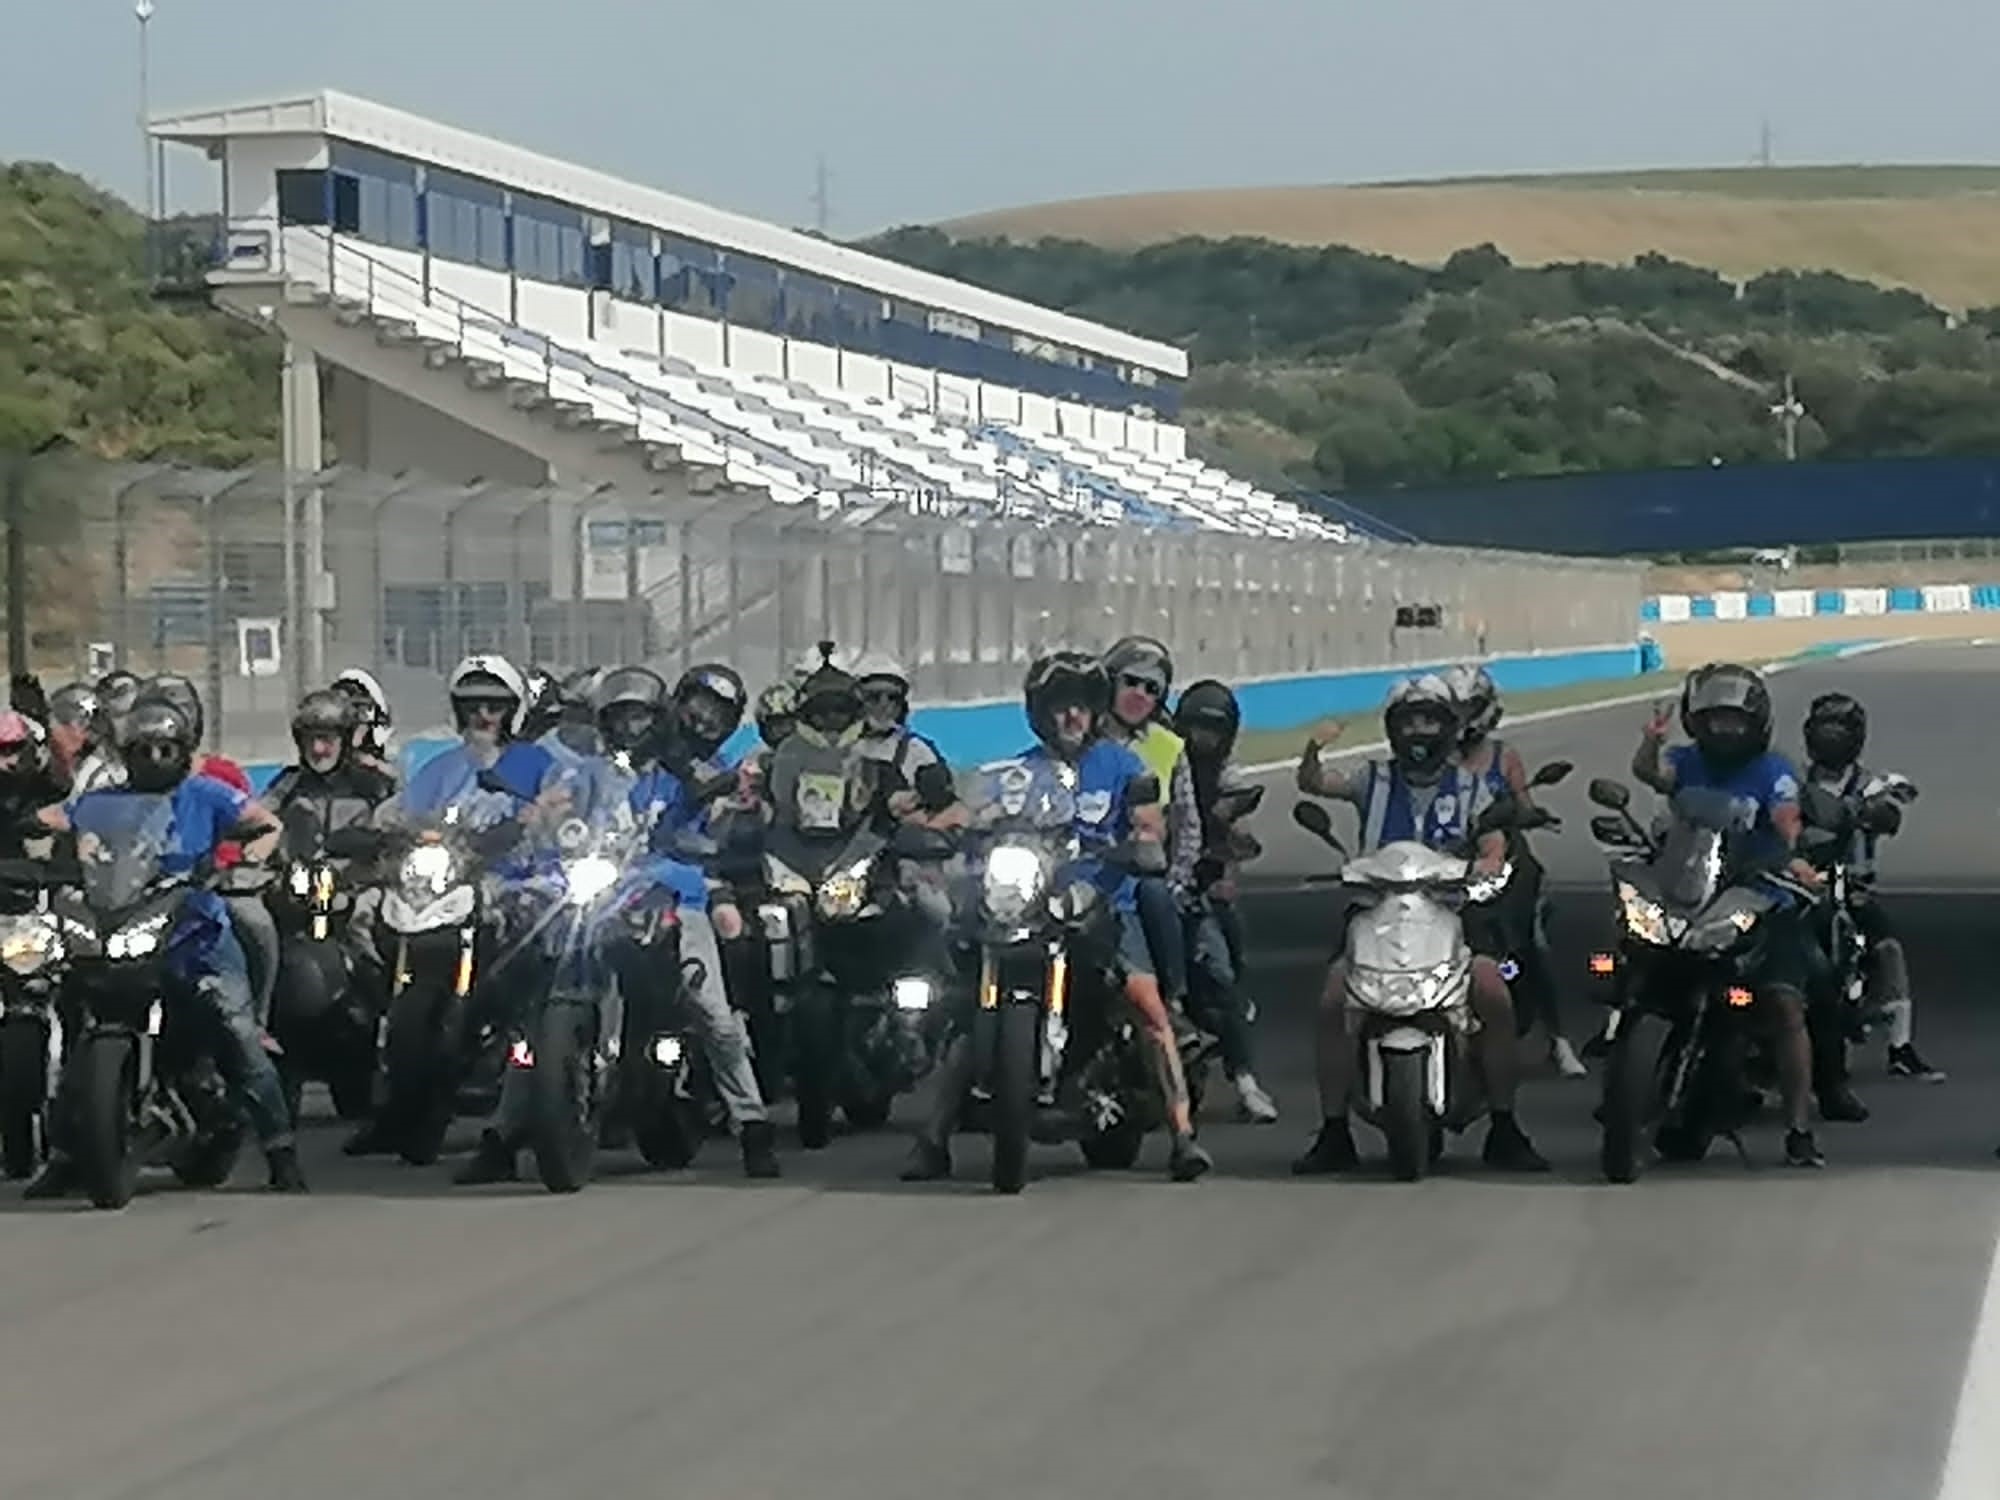 Afiliados en motos en el Circuito de Jerez